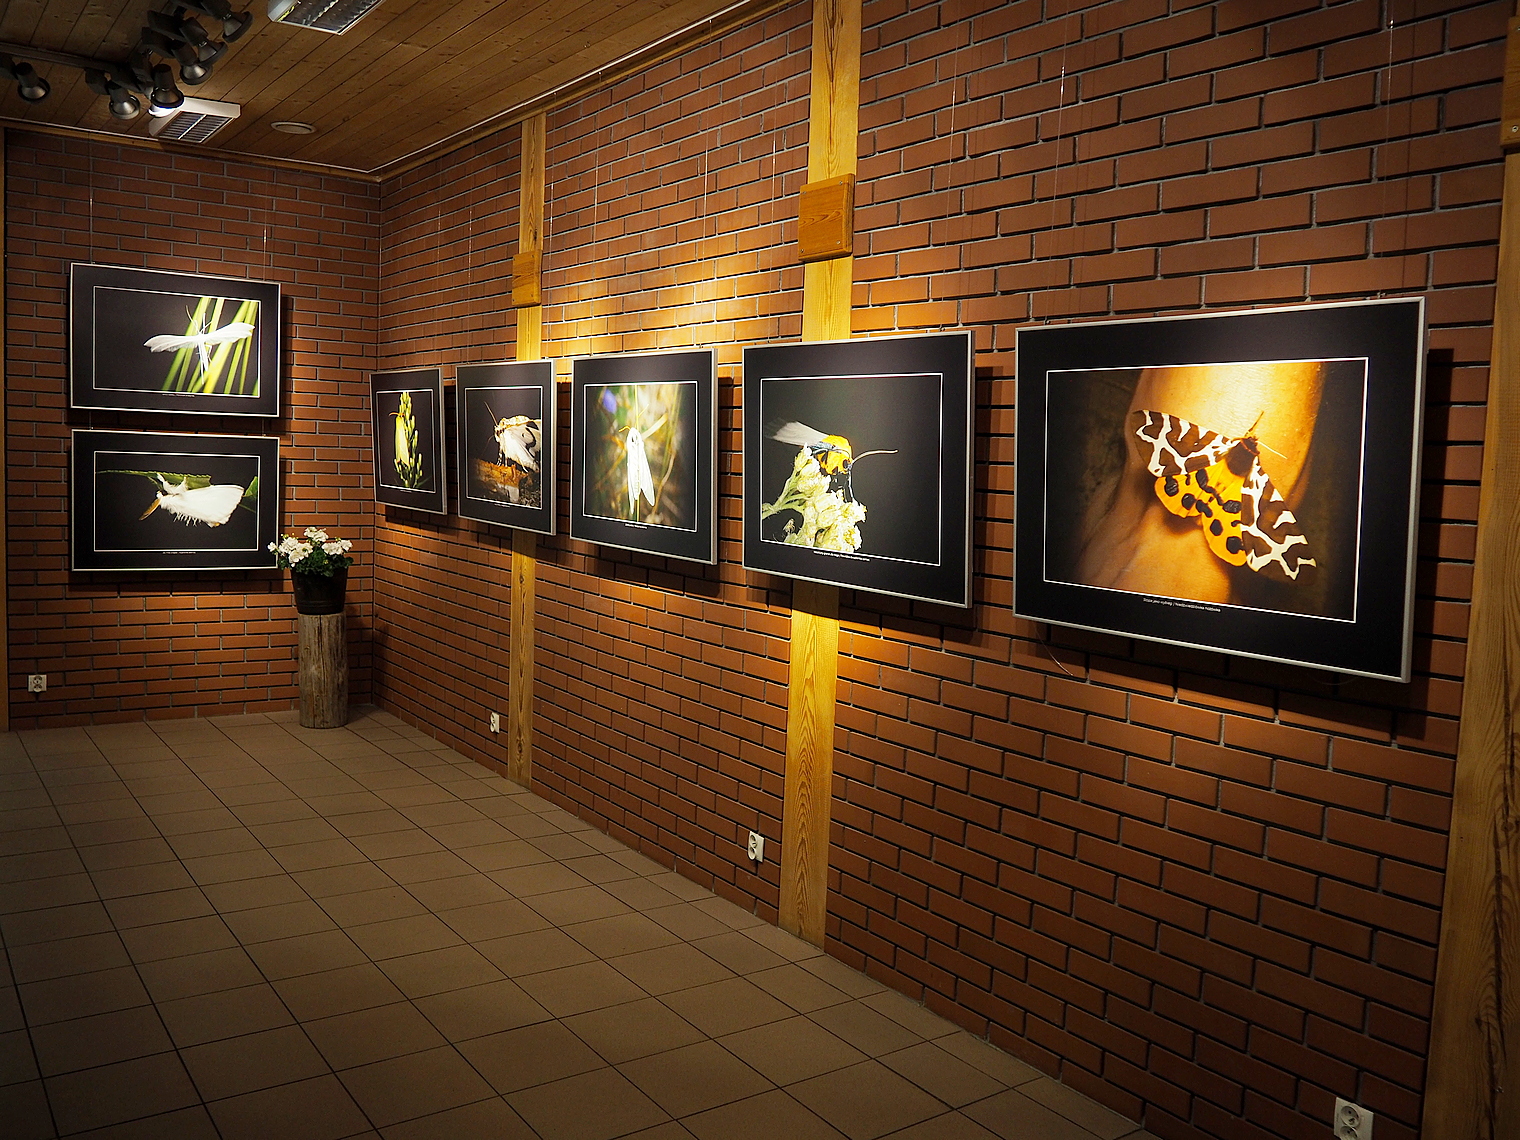 Zdjęcie przedstawia wnętrze Salonu FOTONATURA, w którym prezentowana jest wystawa wyłowione z nocy. Fot. R. Konieczny